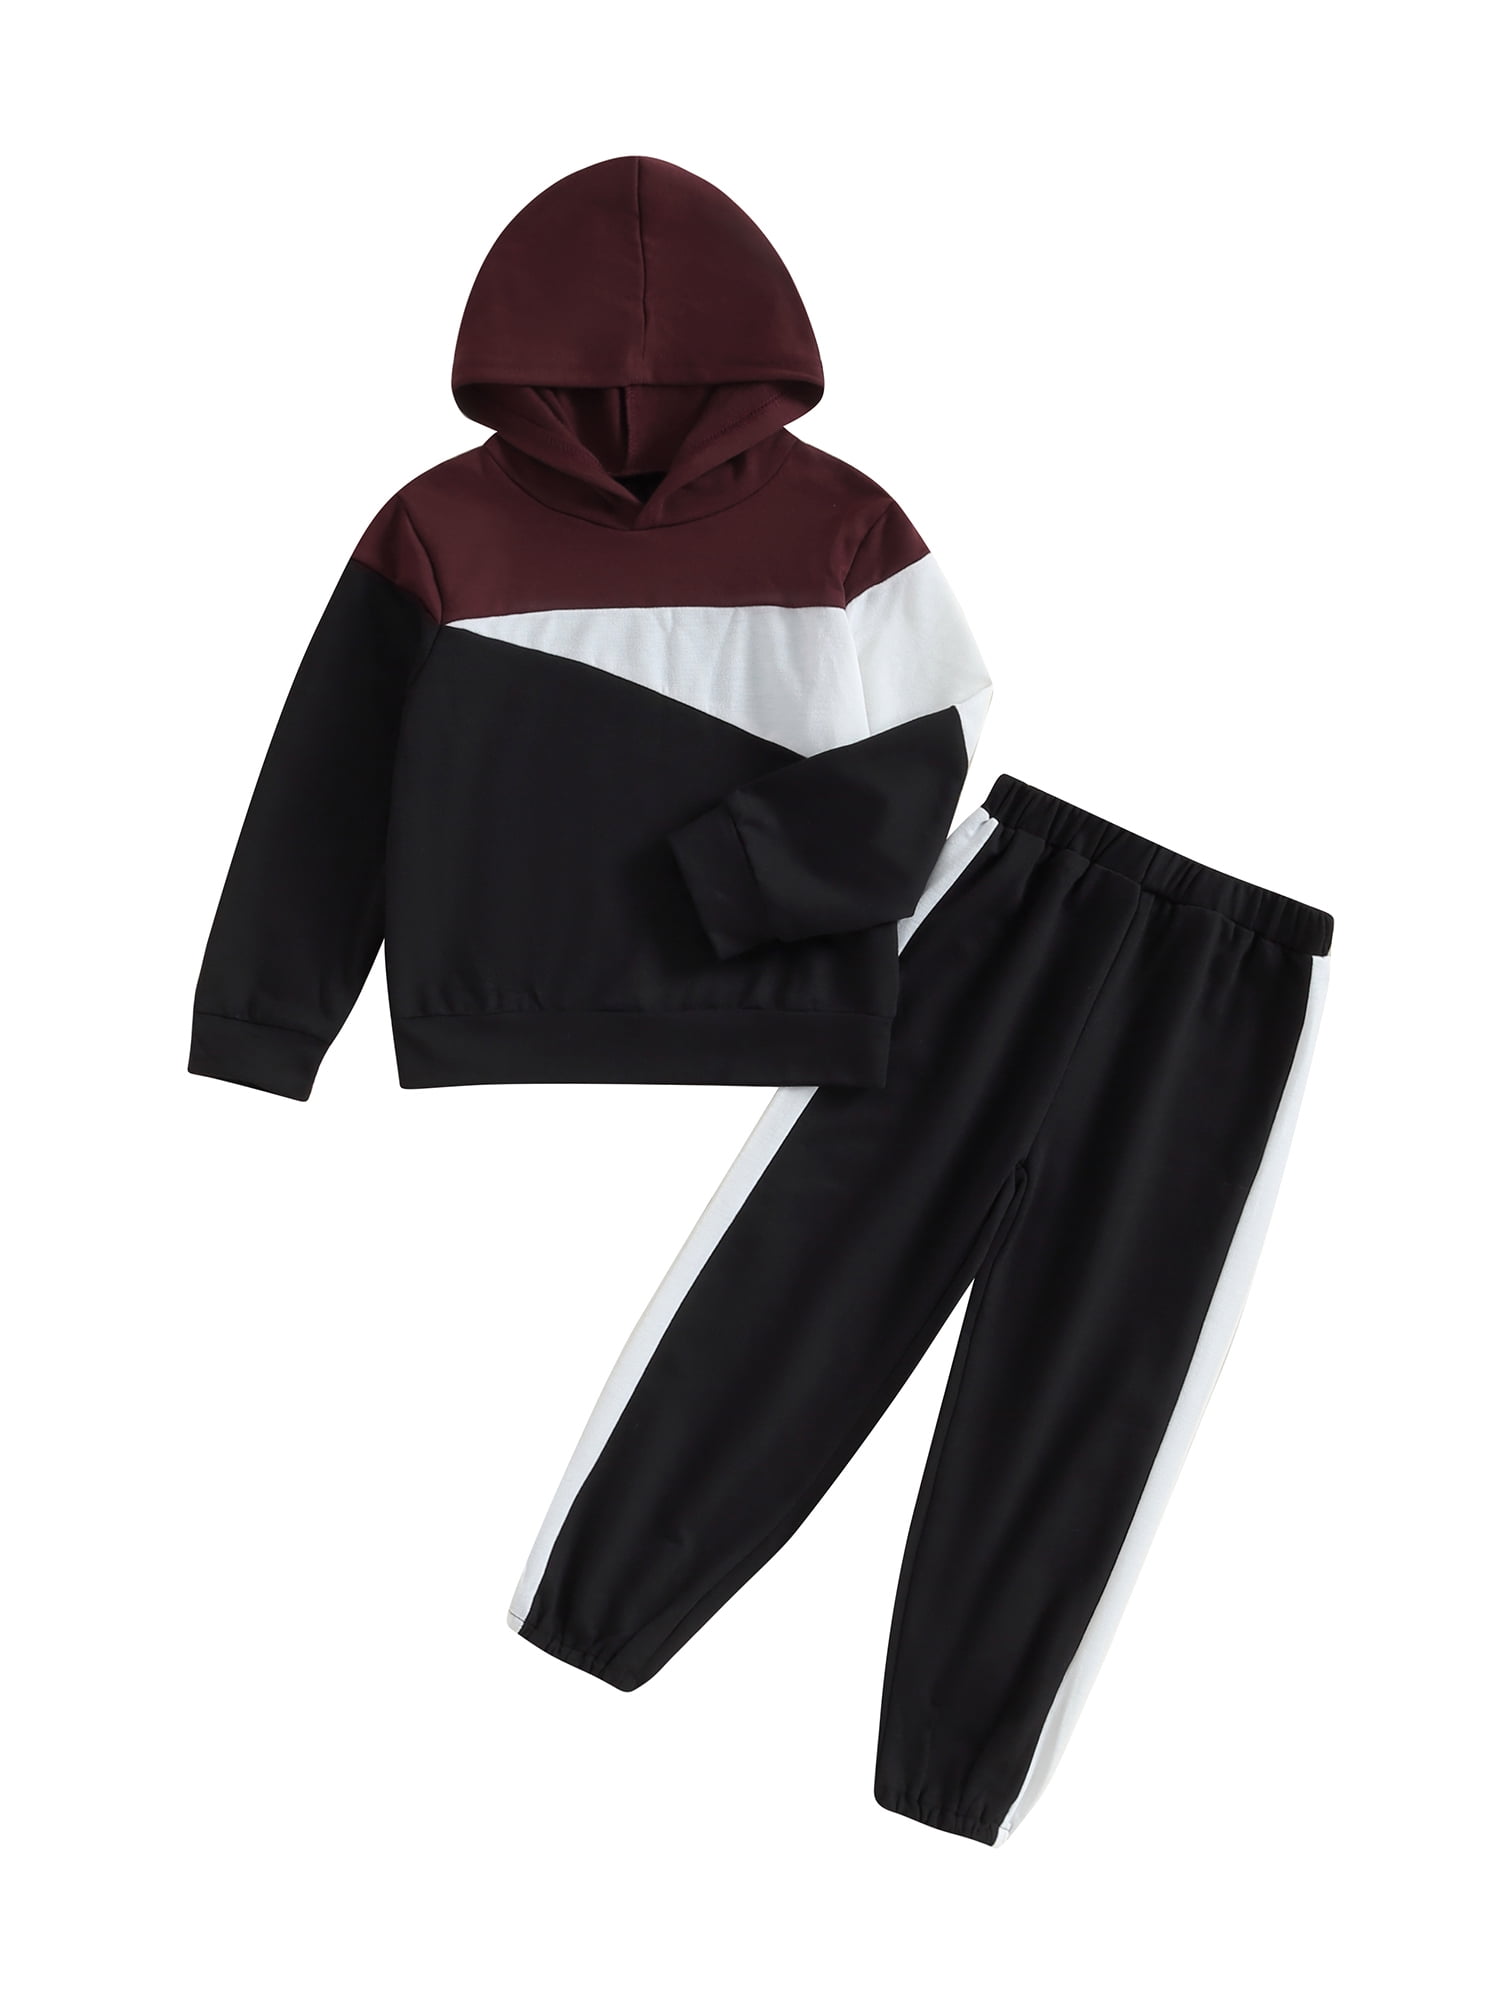 jaweiwi Kids Little Boy Autumn Clothes Set 5T 6T 7T Contrast Color Long ...